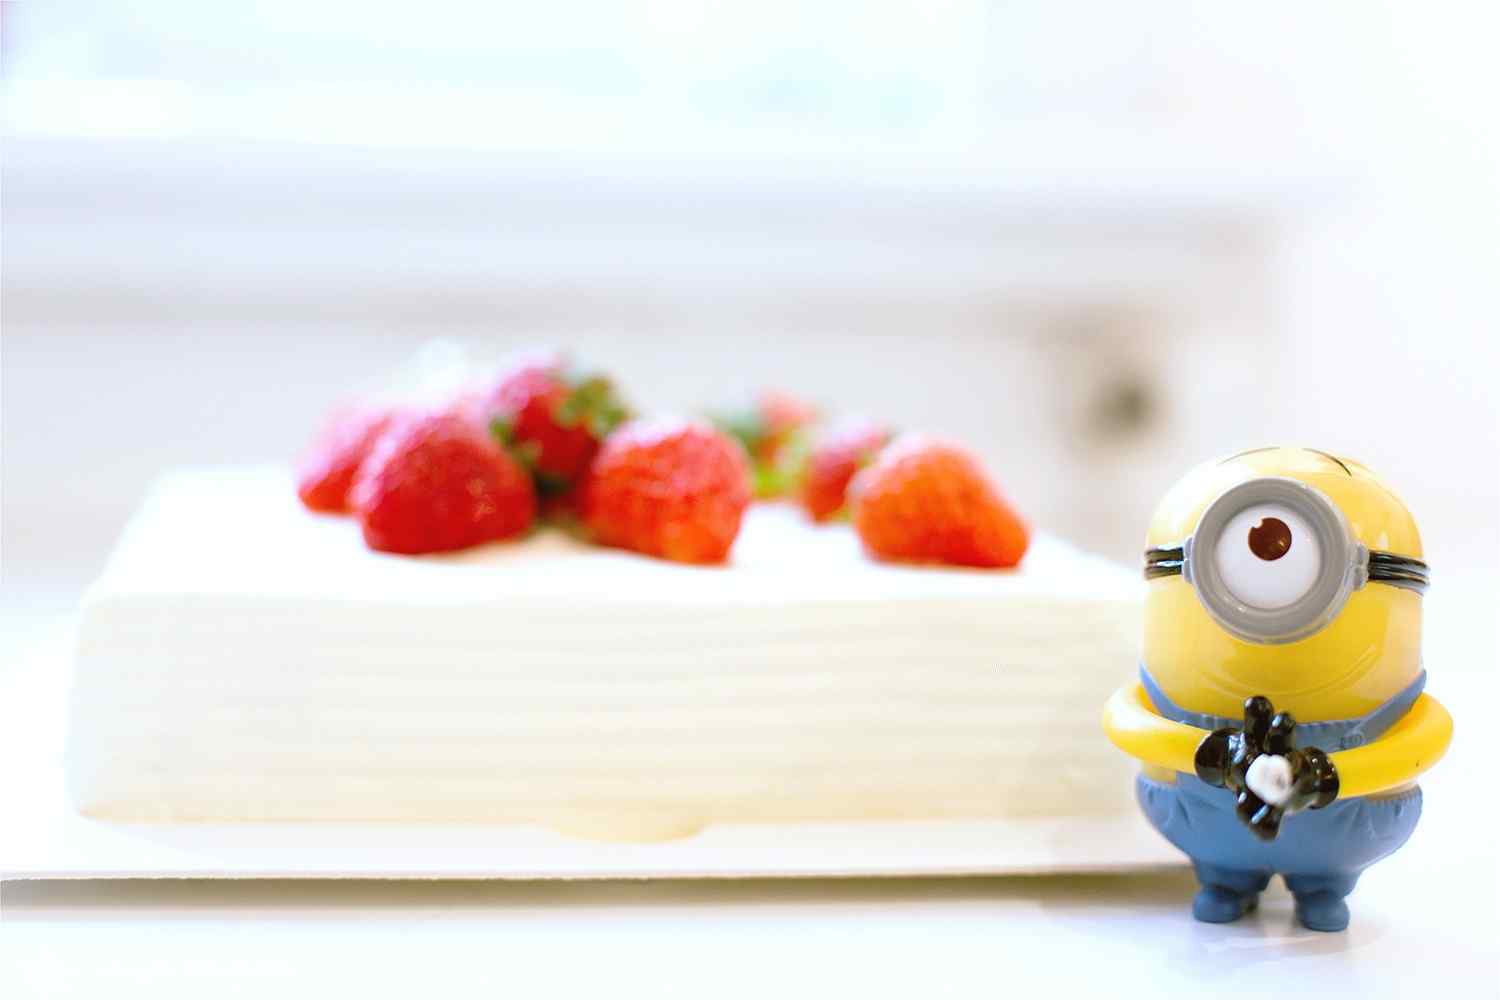 草莓蛋糕与可爱的小黄人图片